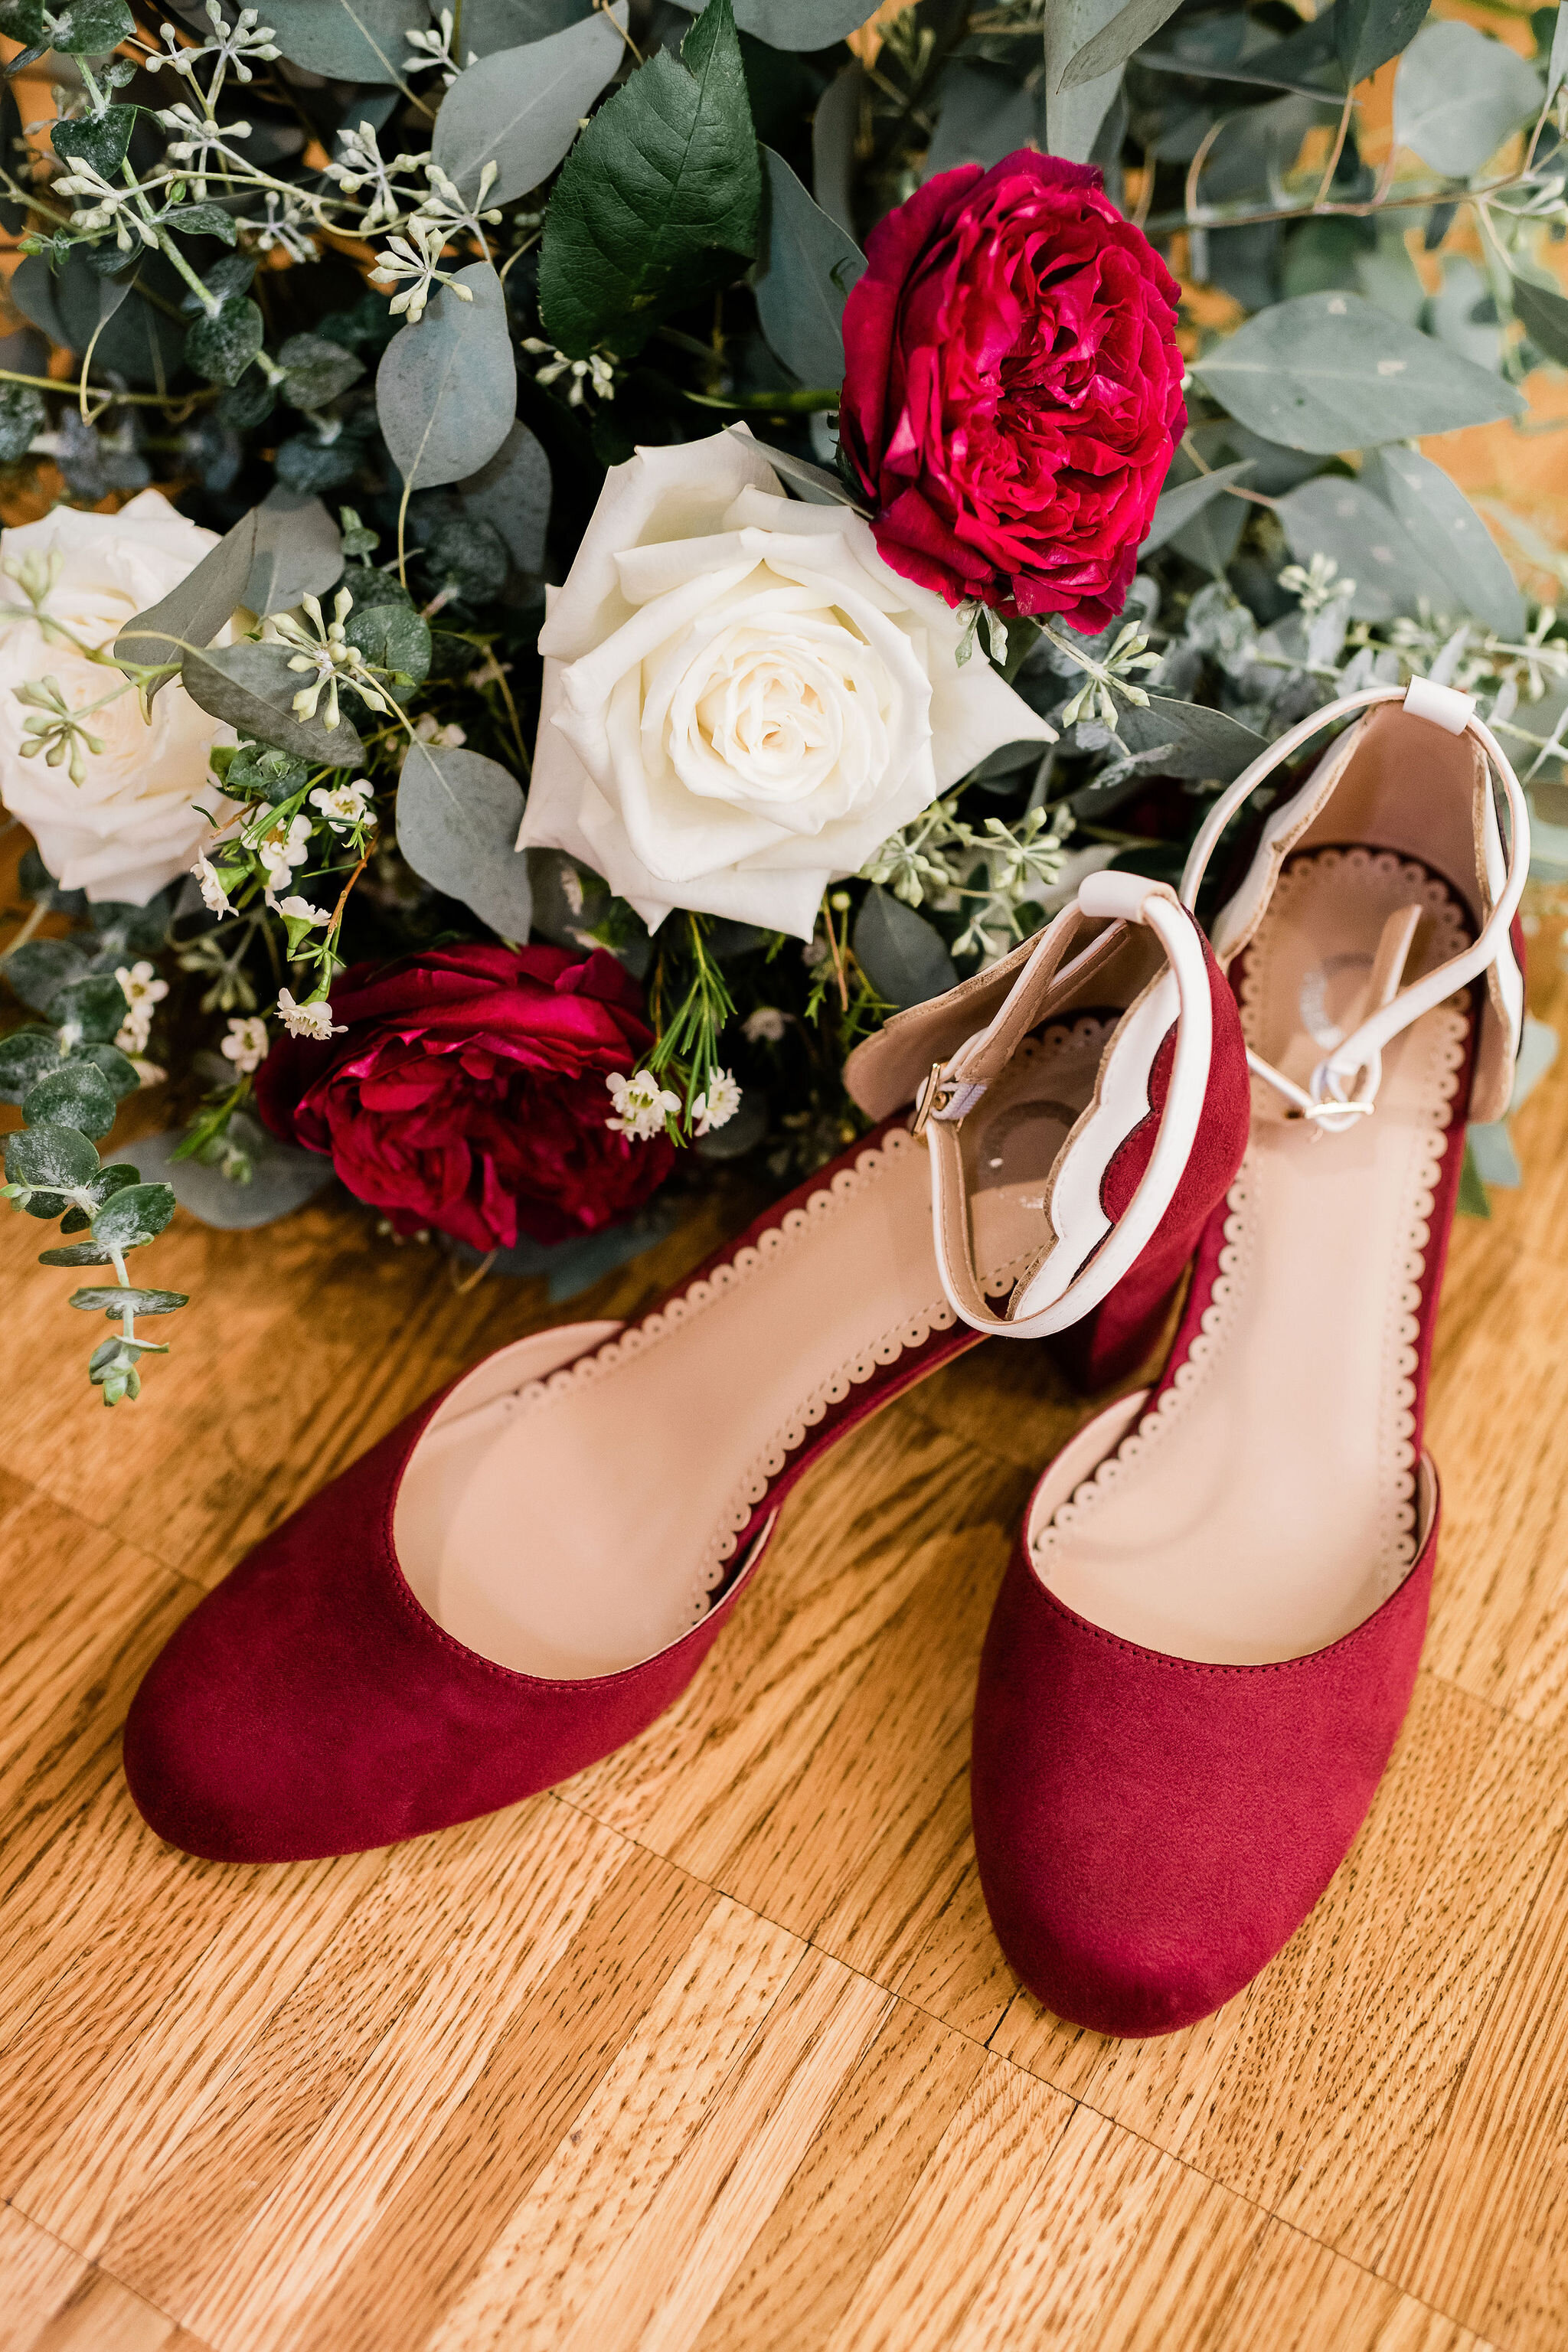 Bride's shoes and bouquet